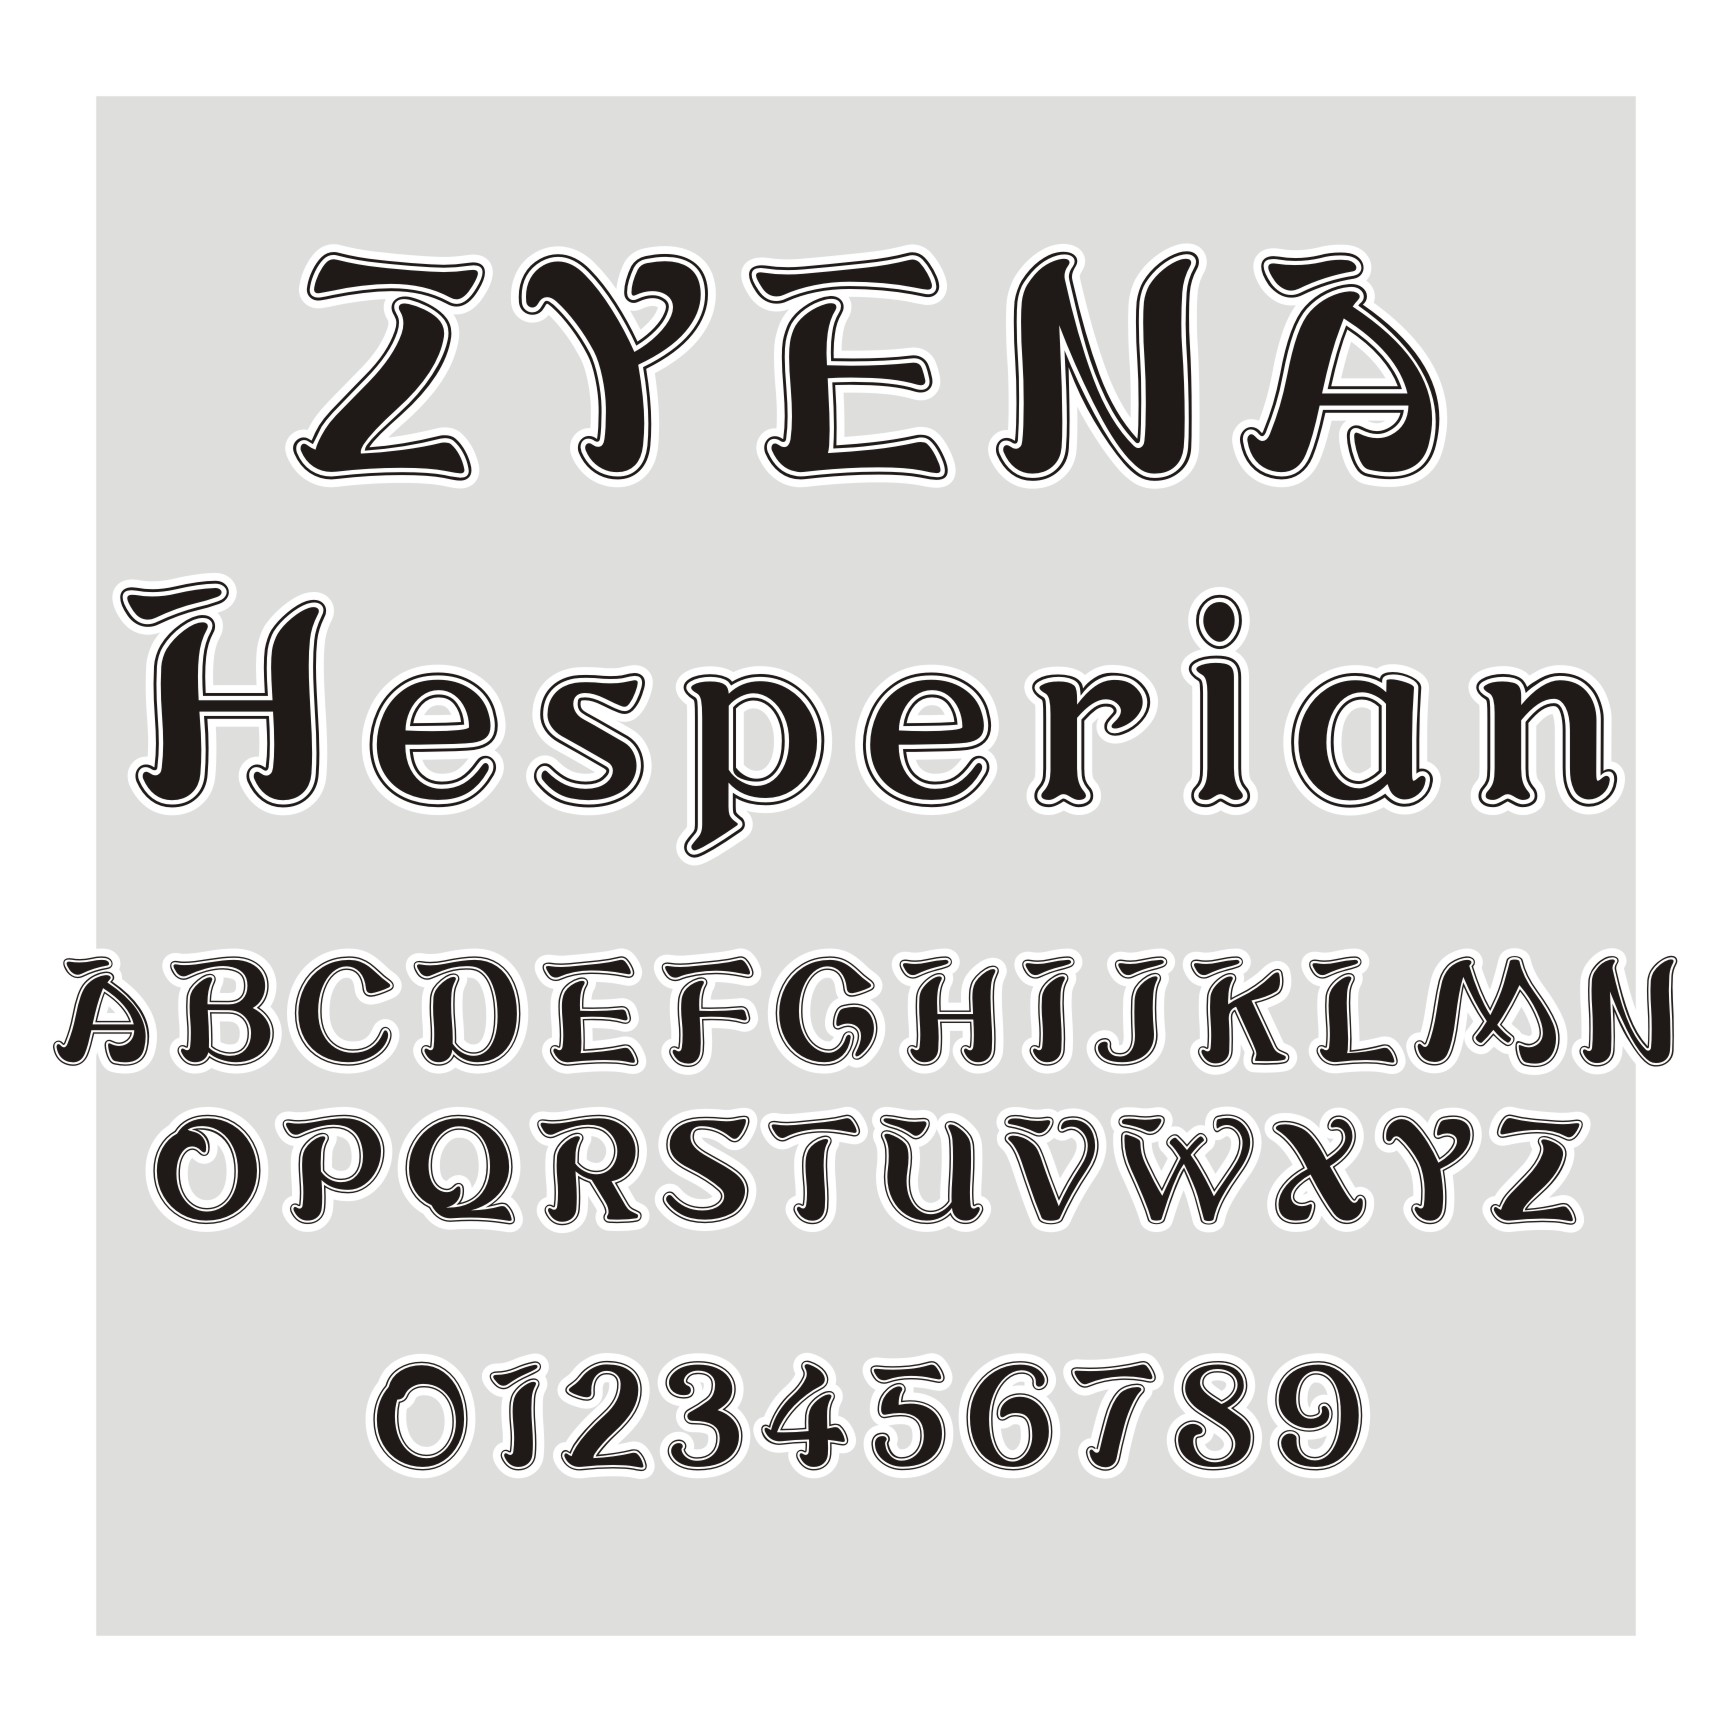 ZYENA Hesperian